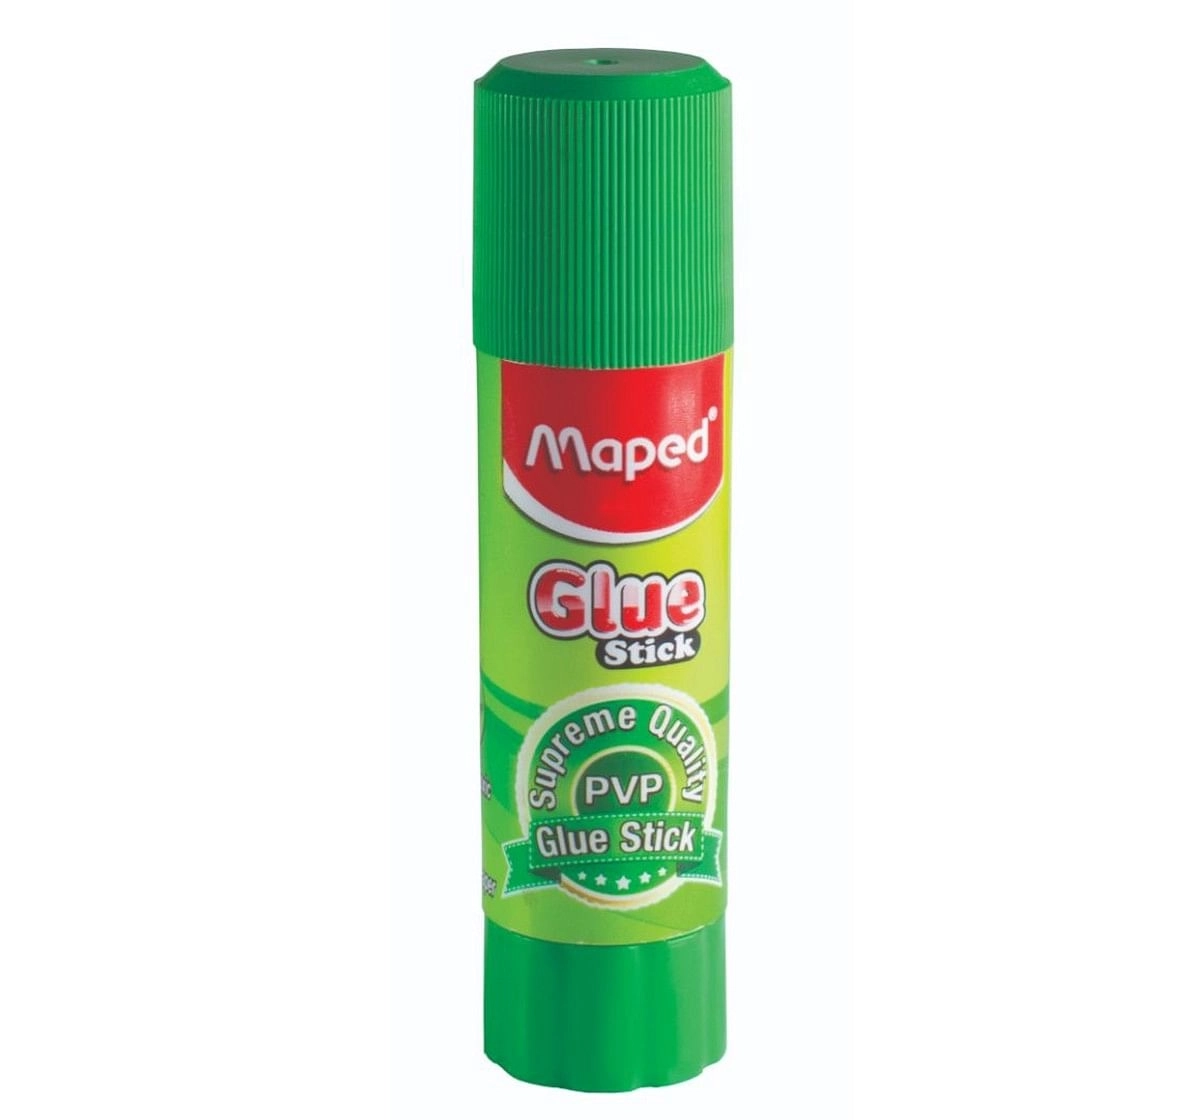 Maped Glue Sticks, 15gm, 7Y+ (Green)